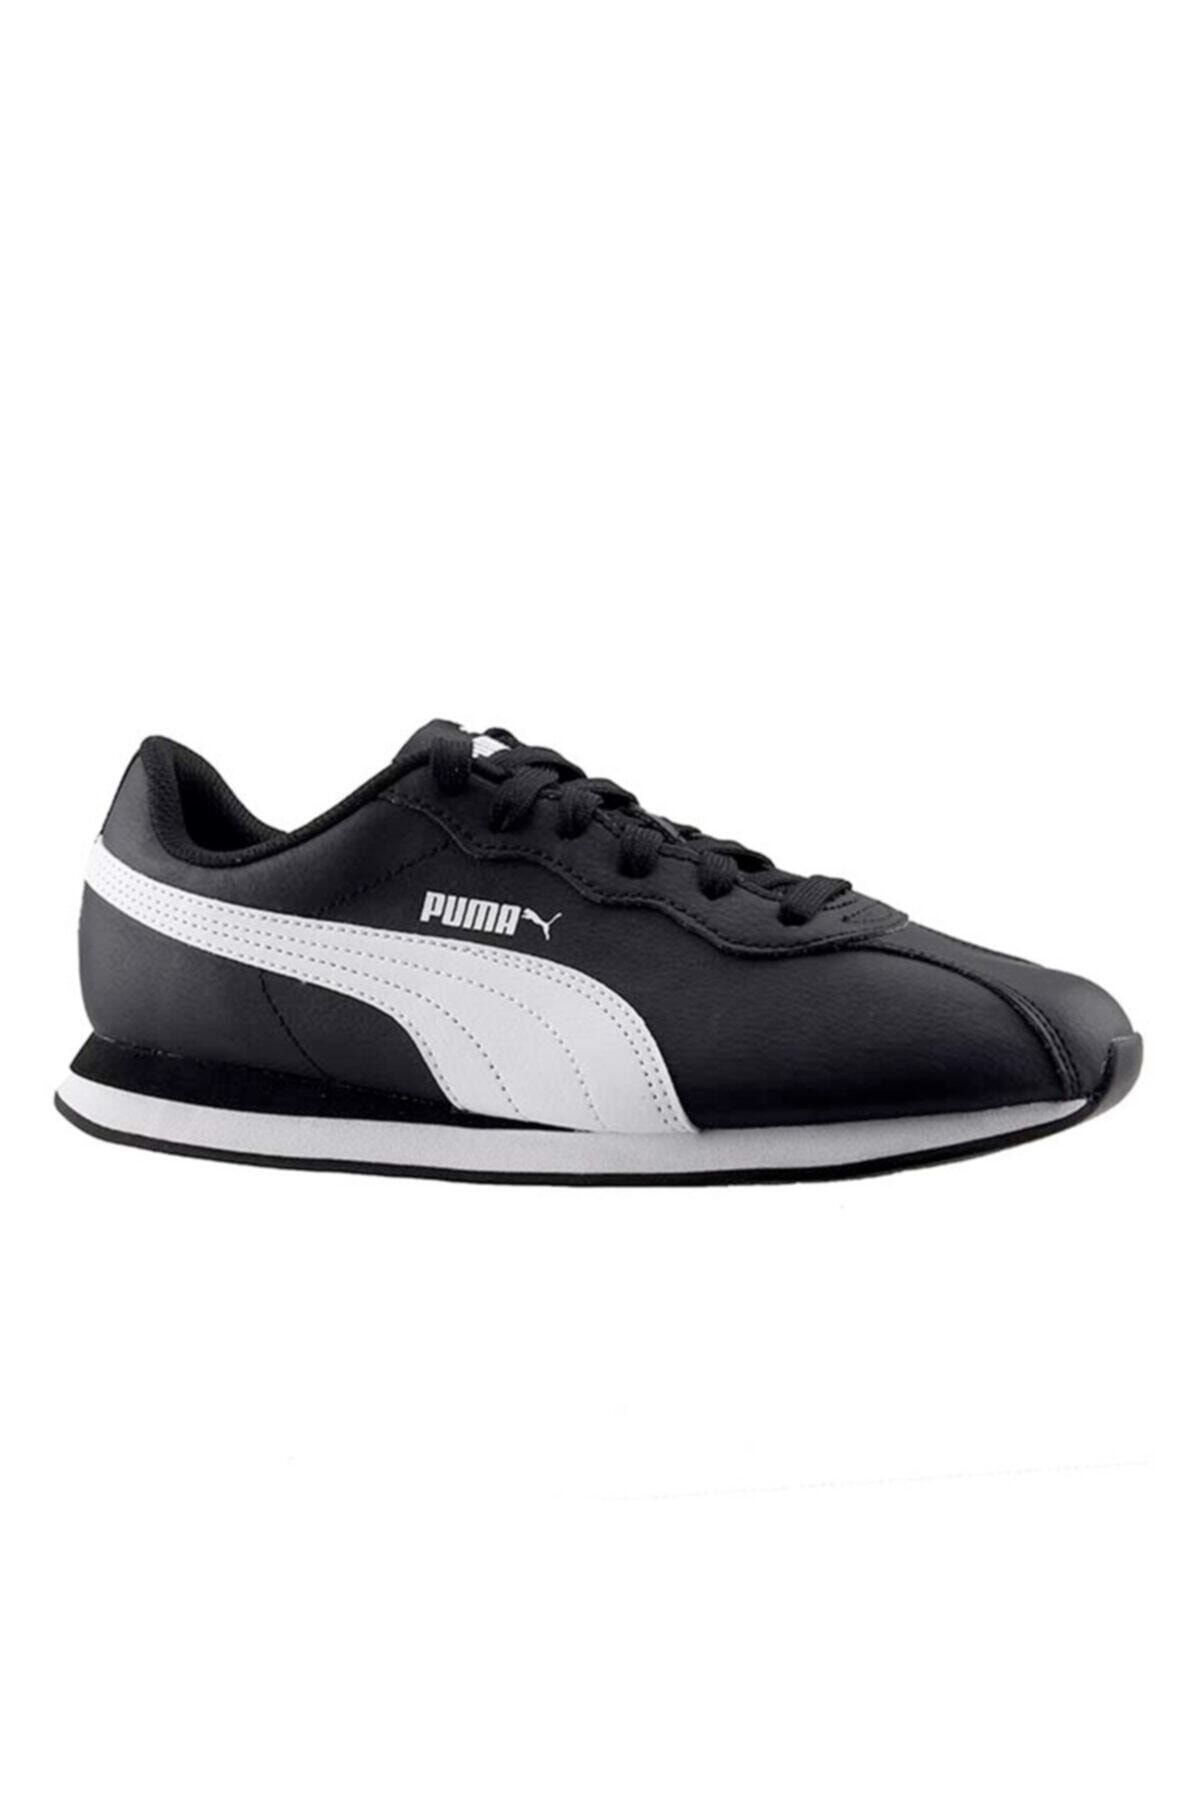 Puma Turın Iı Siyah Erkek Sneaker Ayakkabı